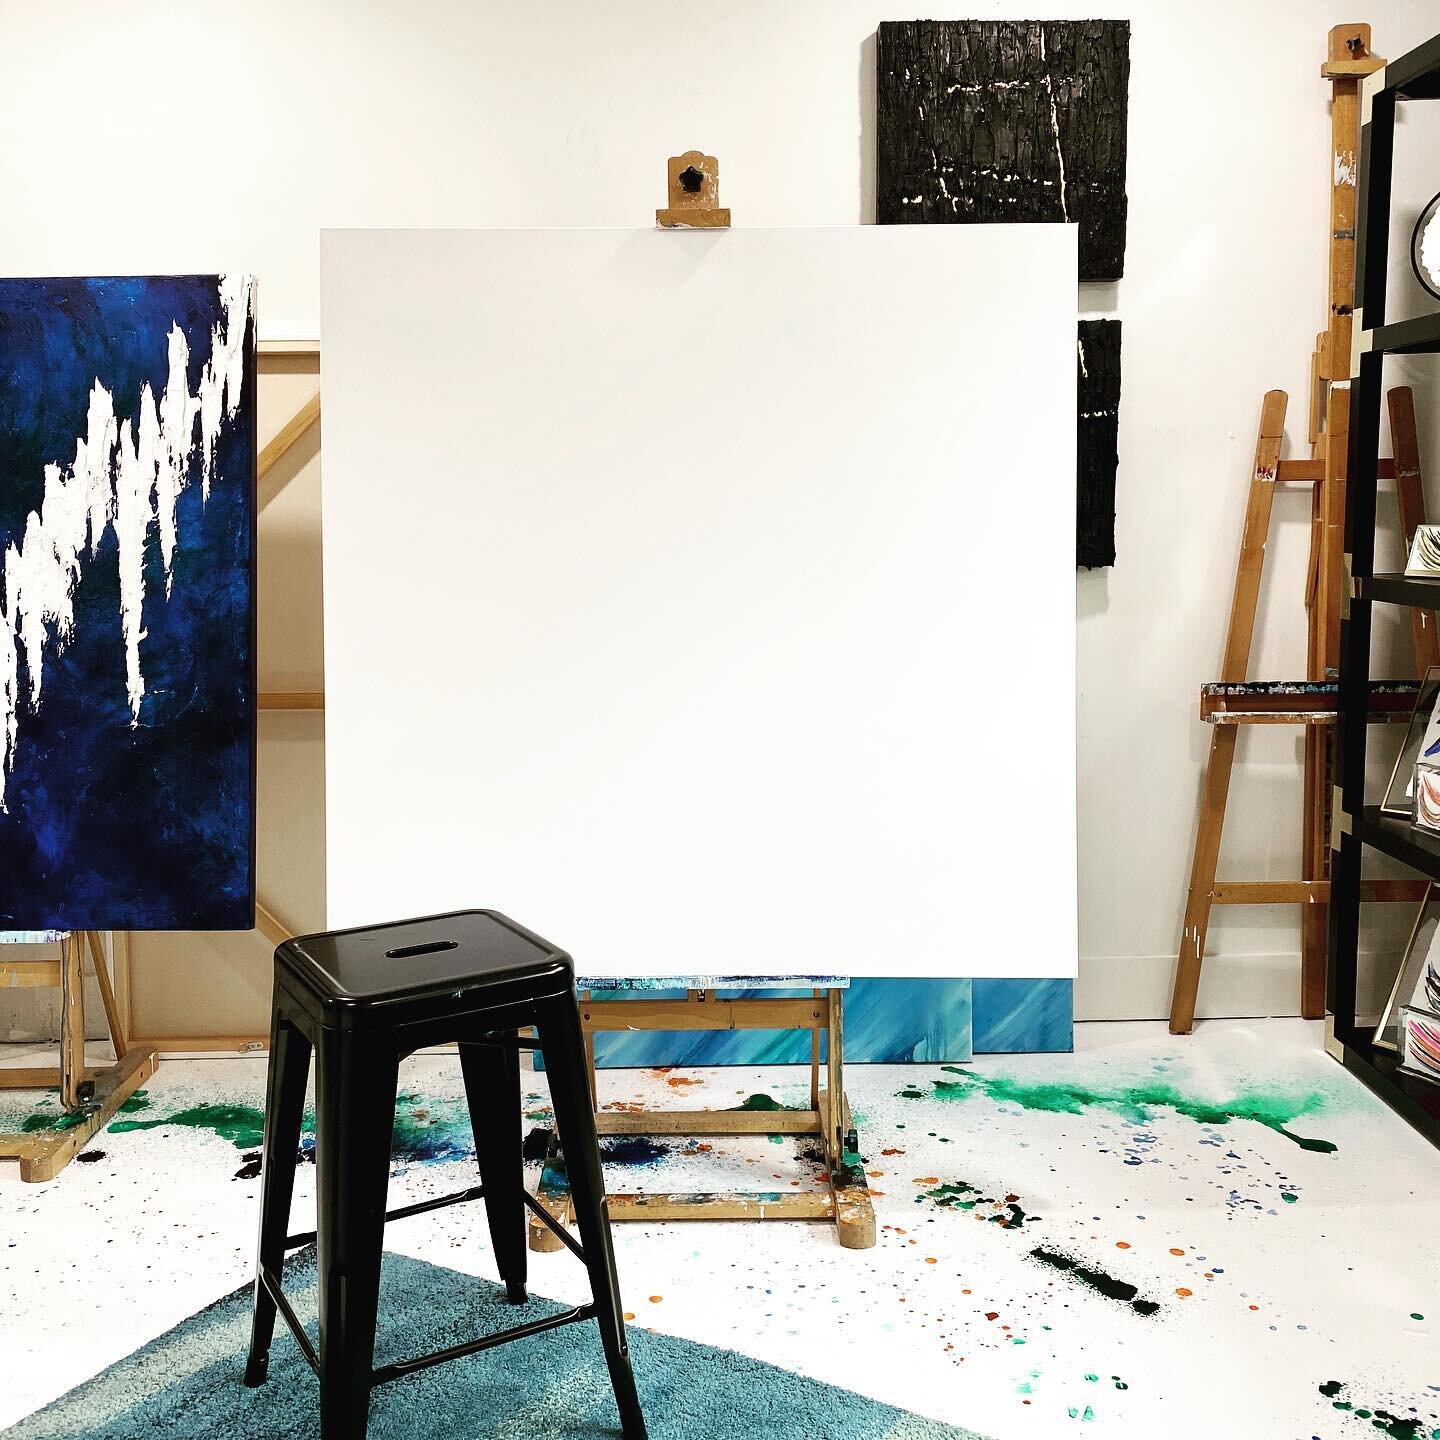 Oh the possibilities 👩🏻&zwj;🎨

#blankcanvas #canvas #art #artstudio #artiststudio #sarahtodd #abstractart #abstractartist #dallasartist #dfwartist #dallasart #dallasartist #wheretostart #contemporaryart